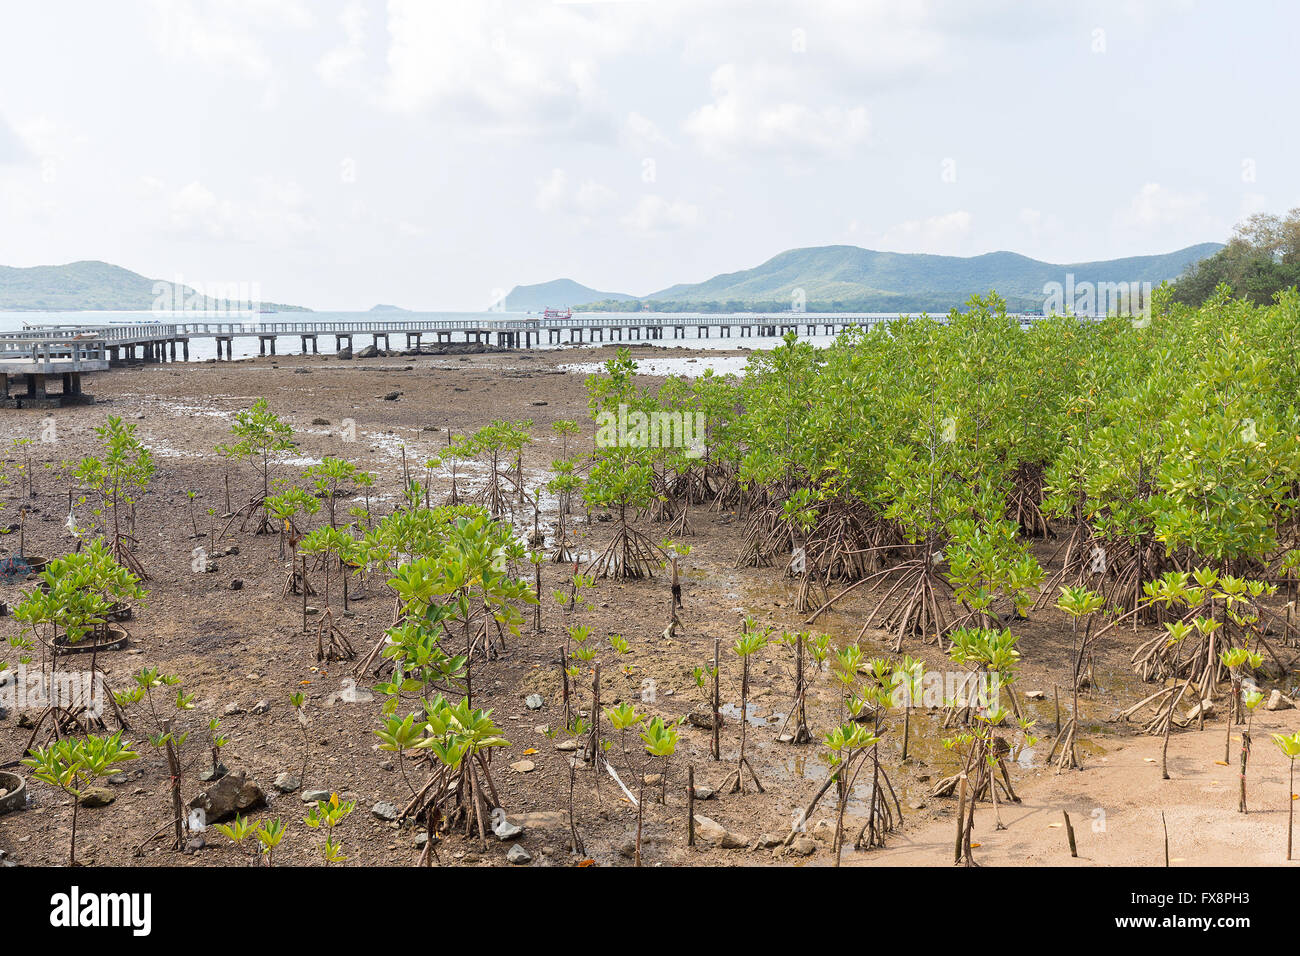 Vert feuille les palétuviers poussent sur la plage ou l'eau saumâtre humide forêt de mangrove en Thaïlande. Banque D'Images